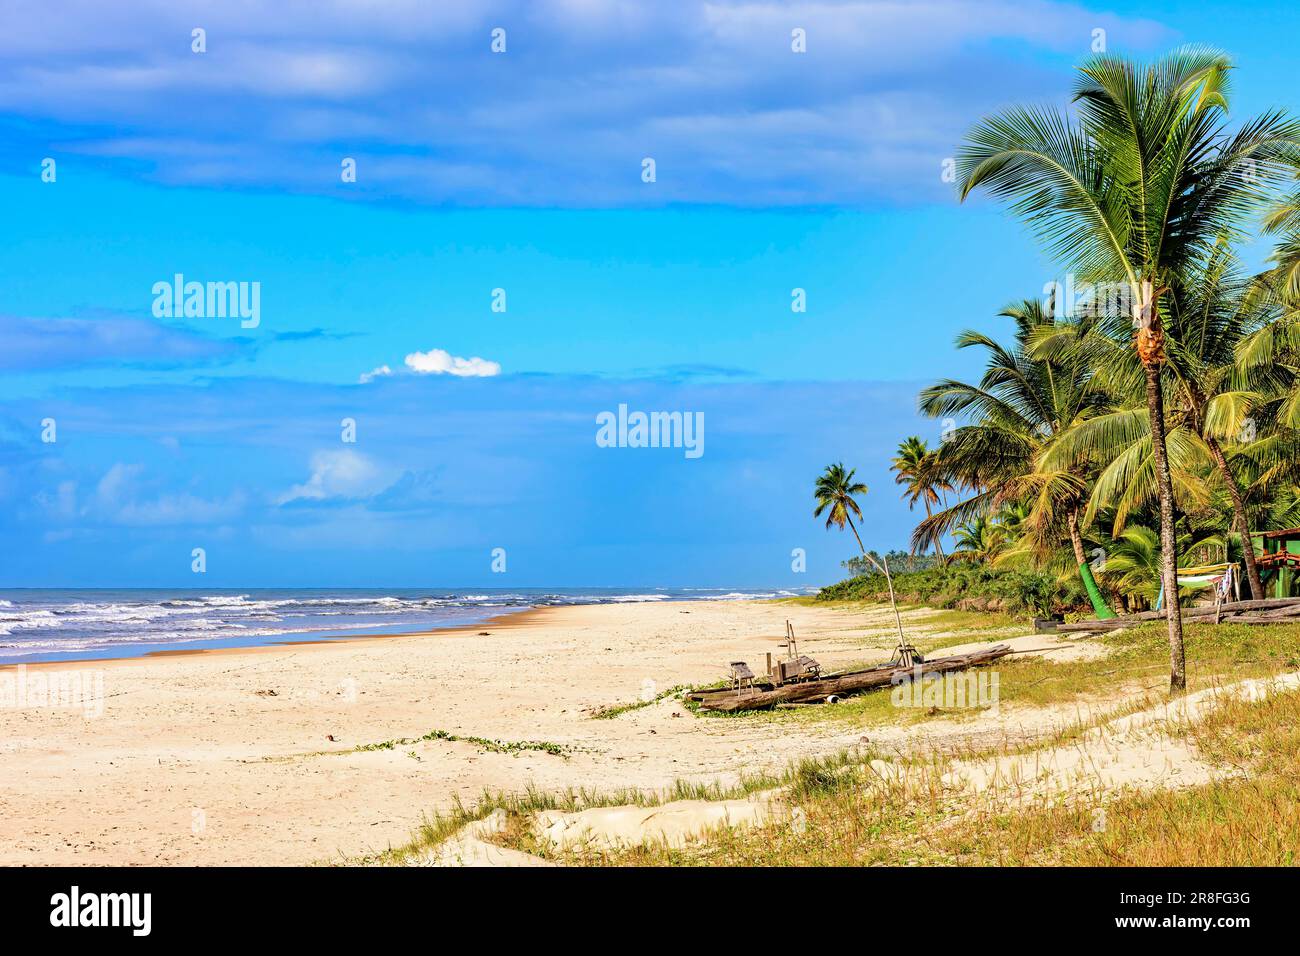 Verlassener Strand, umgeben von Kokospalmen und mit einem rudimentären Schiff, das typisch für den Nordosten Brasiliens ist und in Serra als Floß auf dem Sand bezeichnet wird Stockfoto